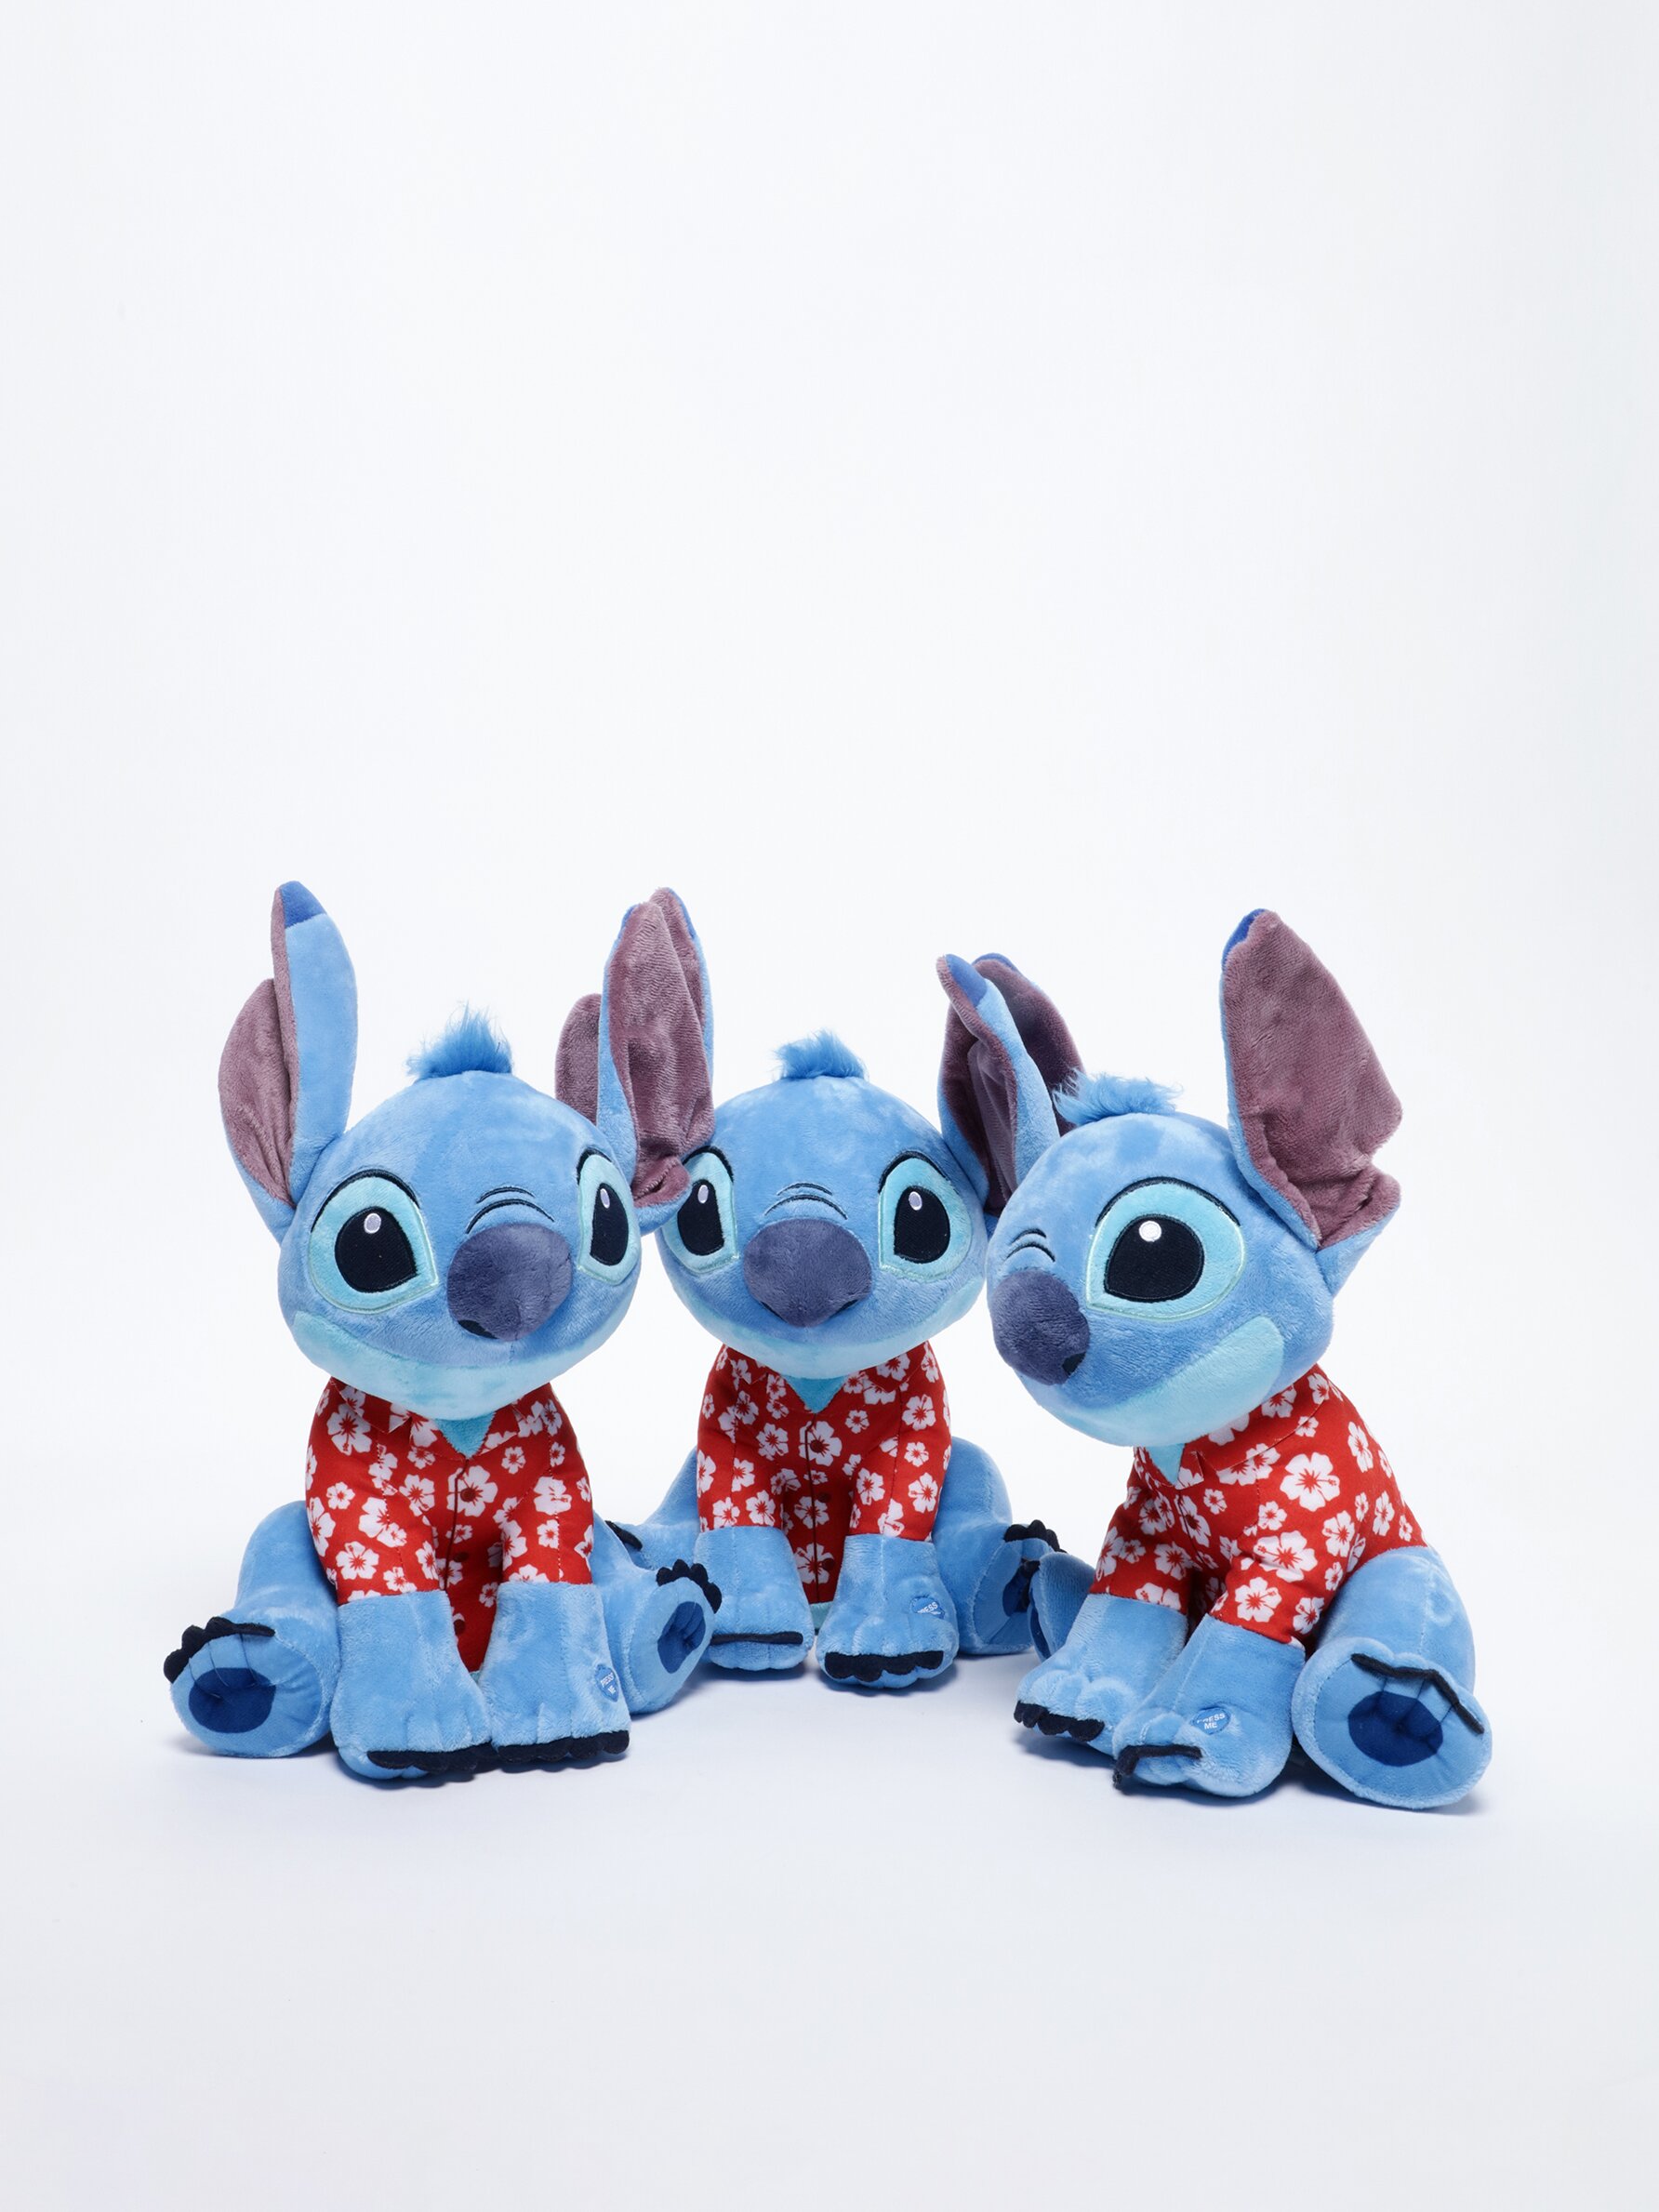 Disney-muñecos de peluche de Lilo & Stitch para niño y niña